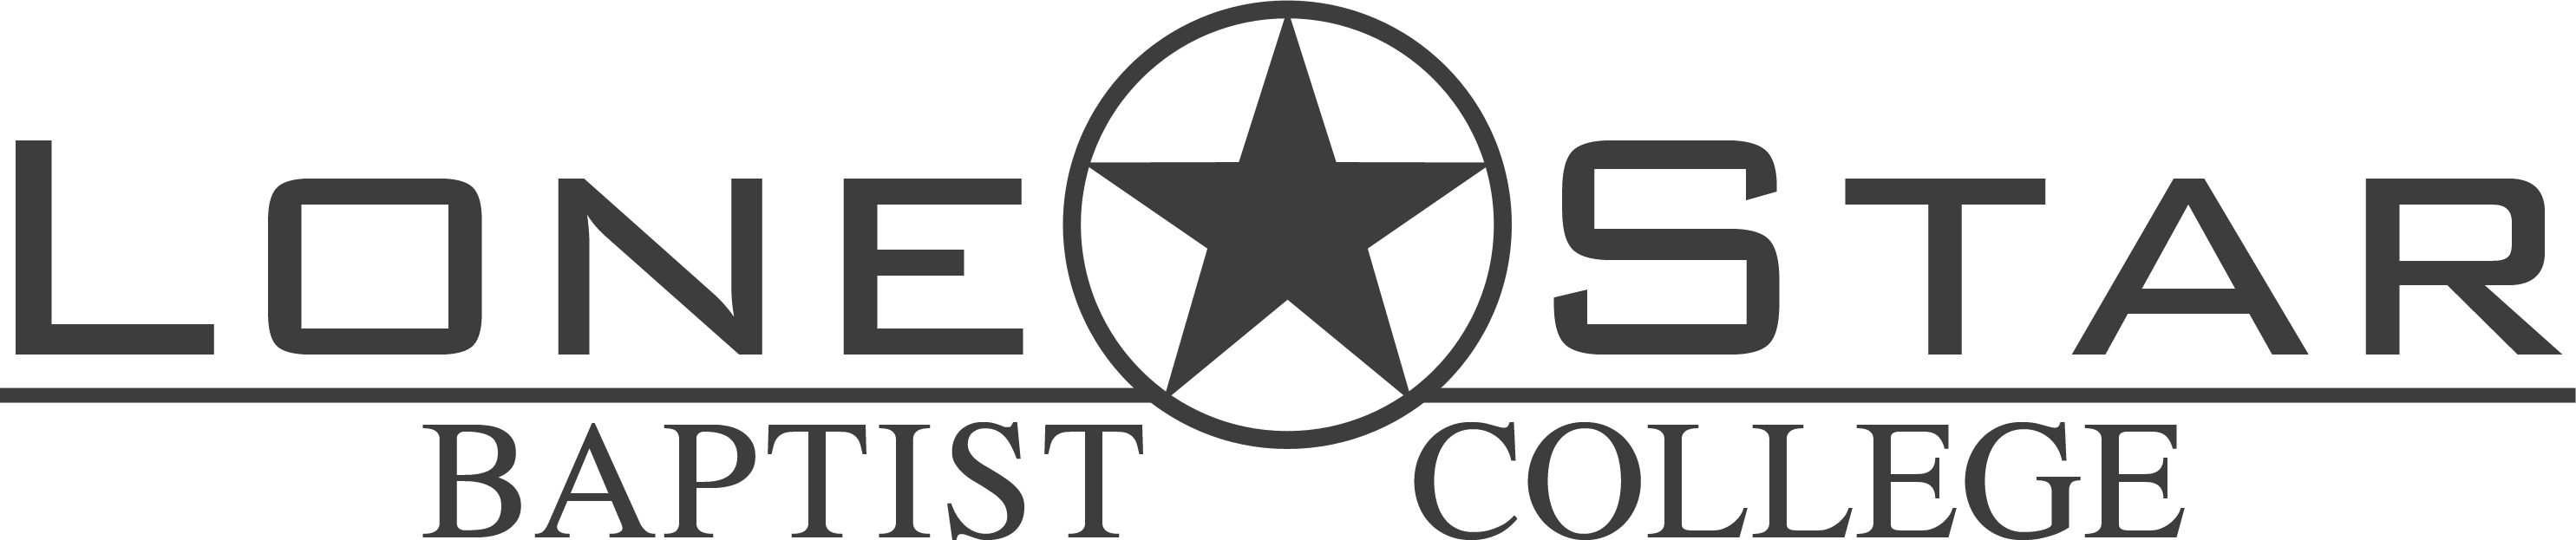 Lone Star Baptist College Online